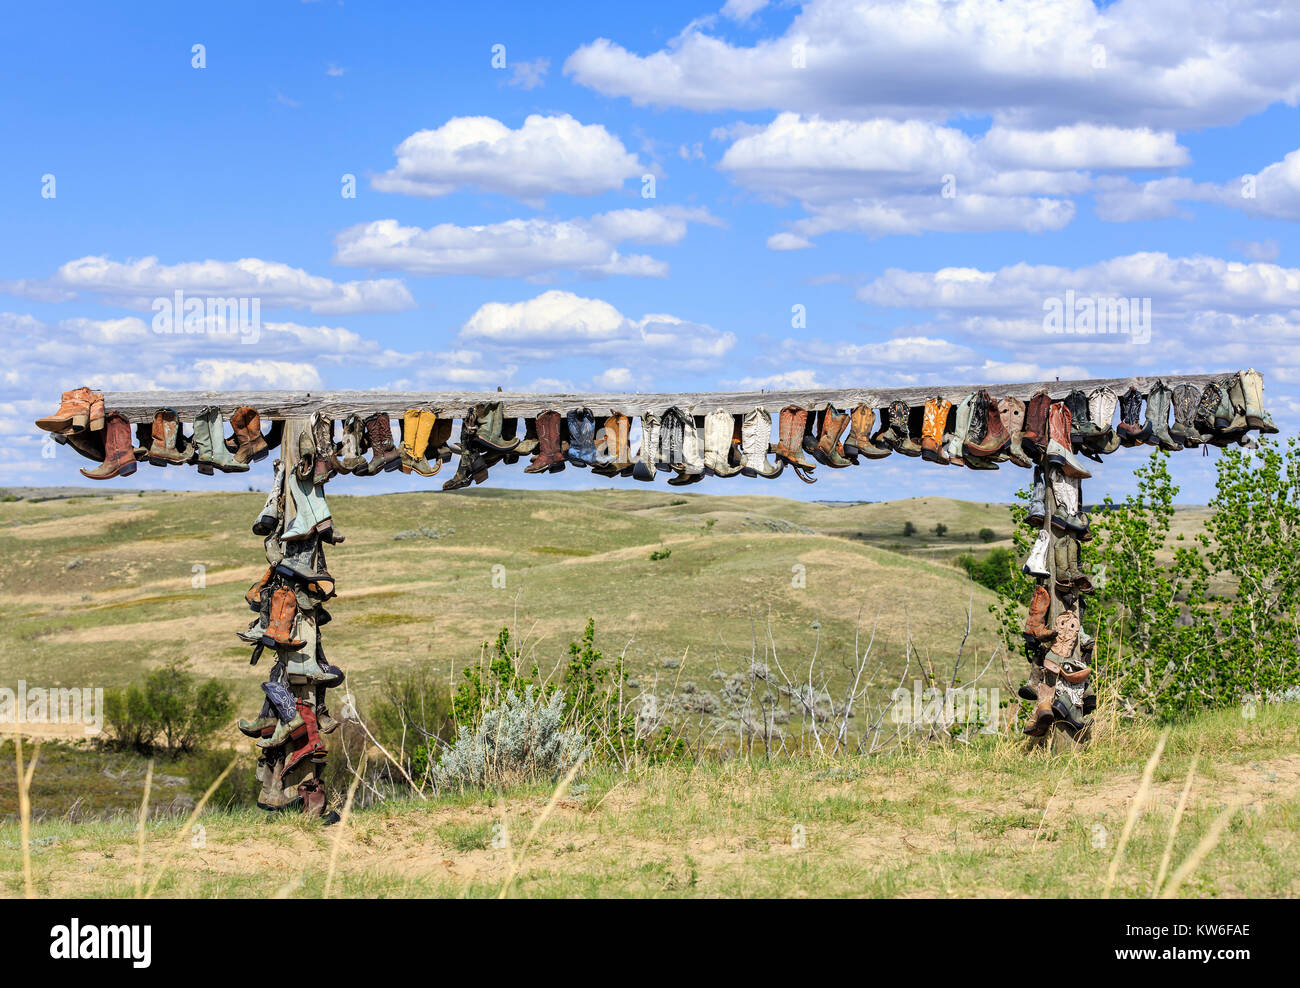 Alte Cowboy Stiefeln hängen an Post, in Erinnerung an John Booth, tolle Sandhills, in der Nähe der Zepter, Saskatchewan, Kanada. Stockfoto